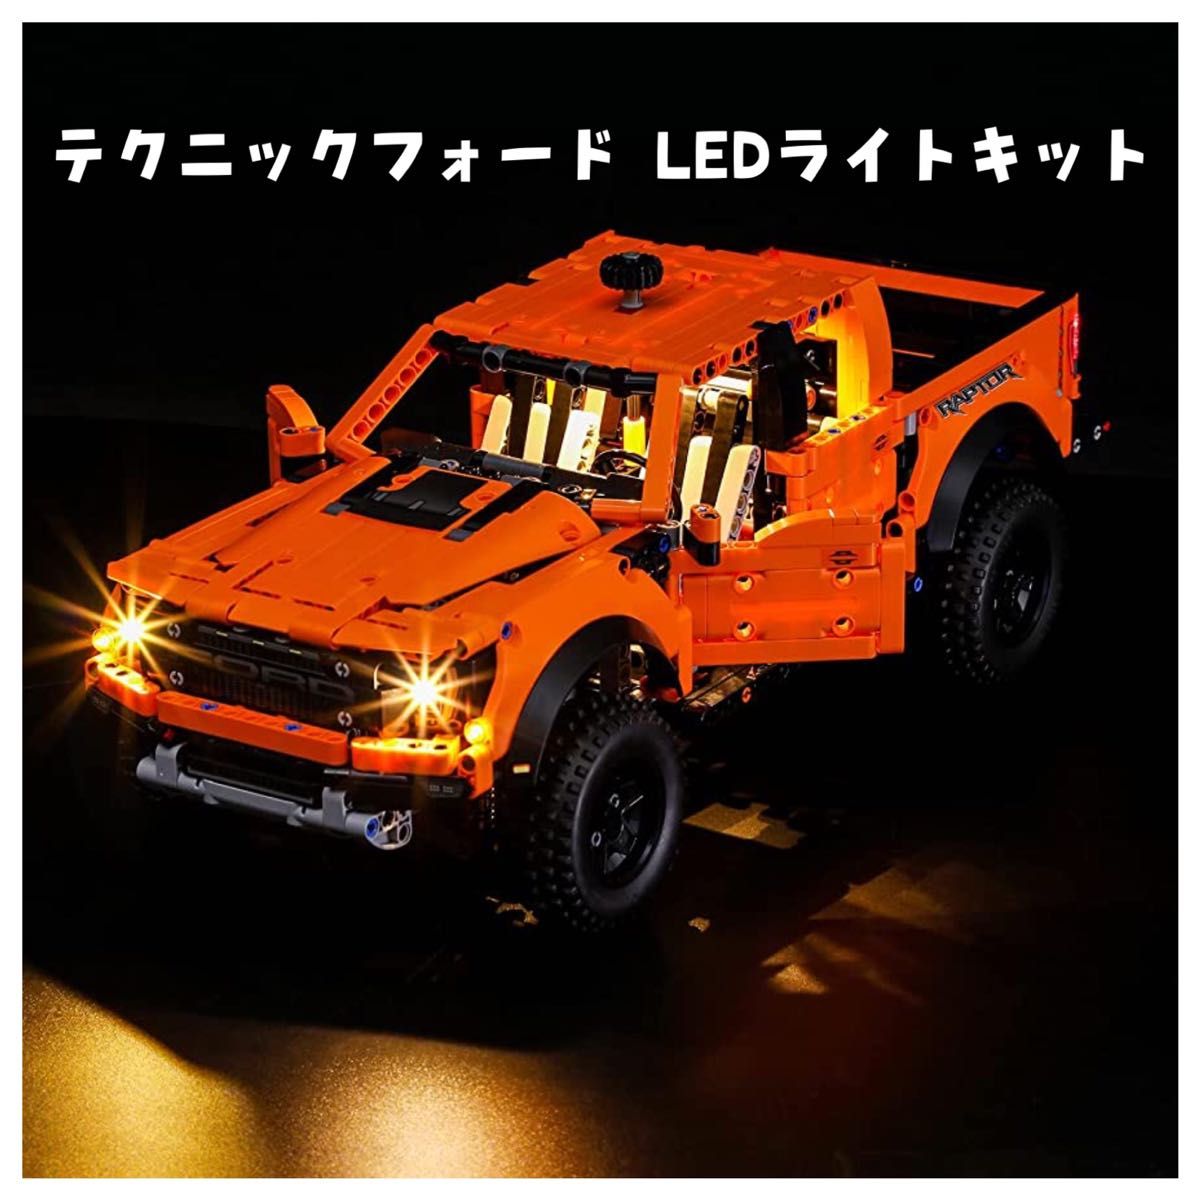 テクニックフォード F-150 ラプター用BRIKSMAX LEDライトキット LEGO レゴ